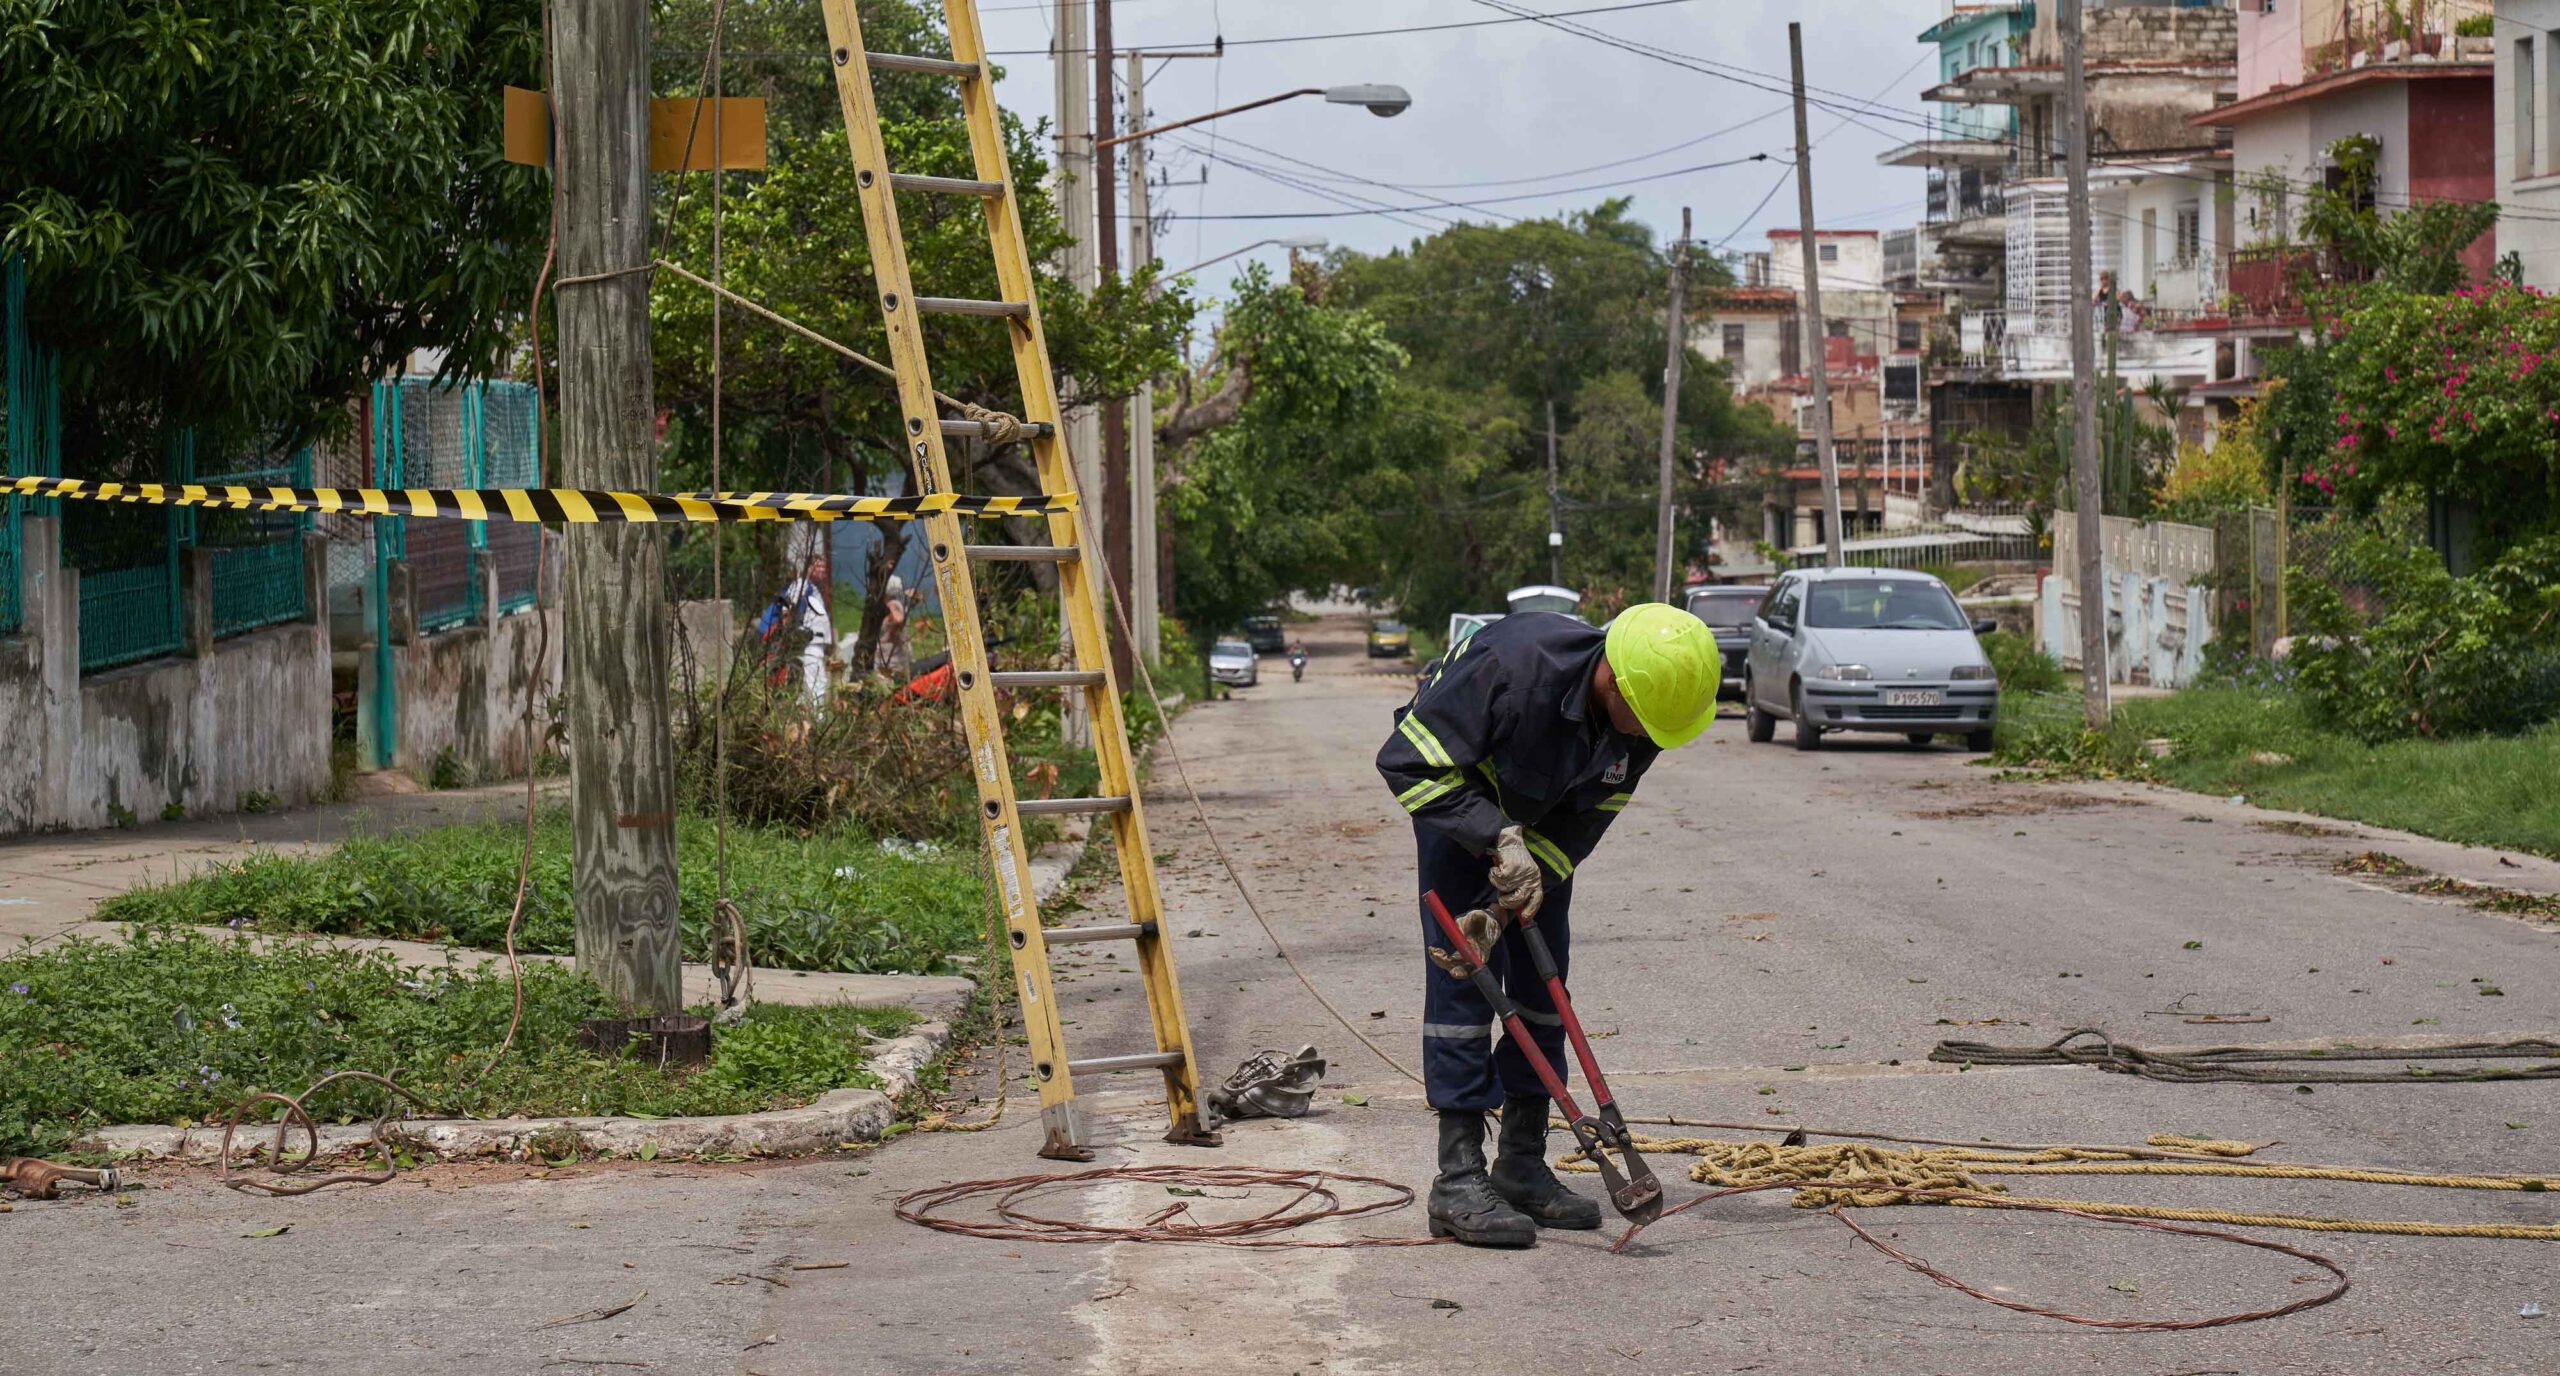 A 10 días de su paso, los rastros del devastador huracán Ian continúan reflejándose en Cuba